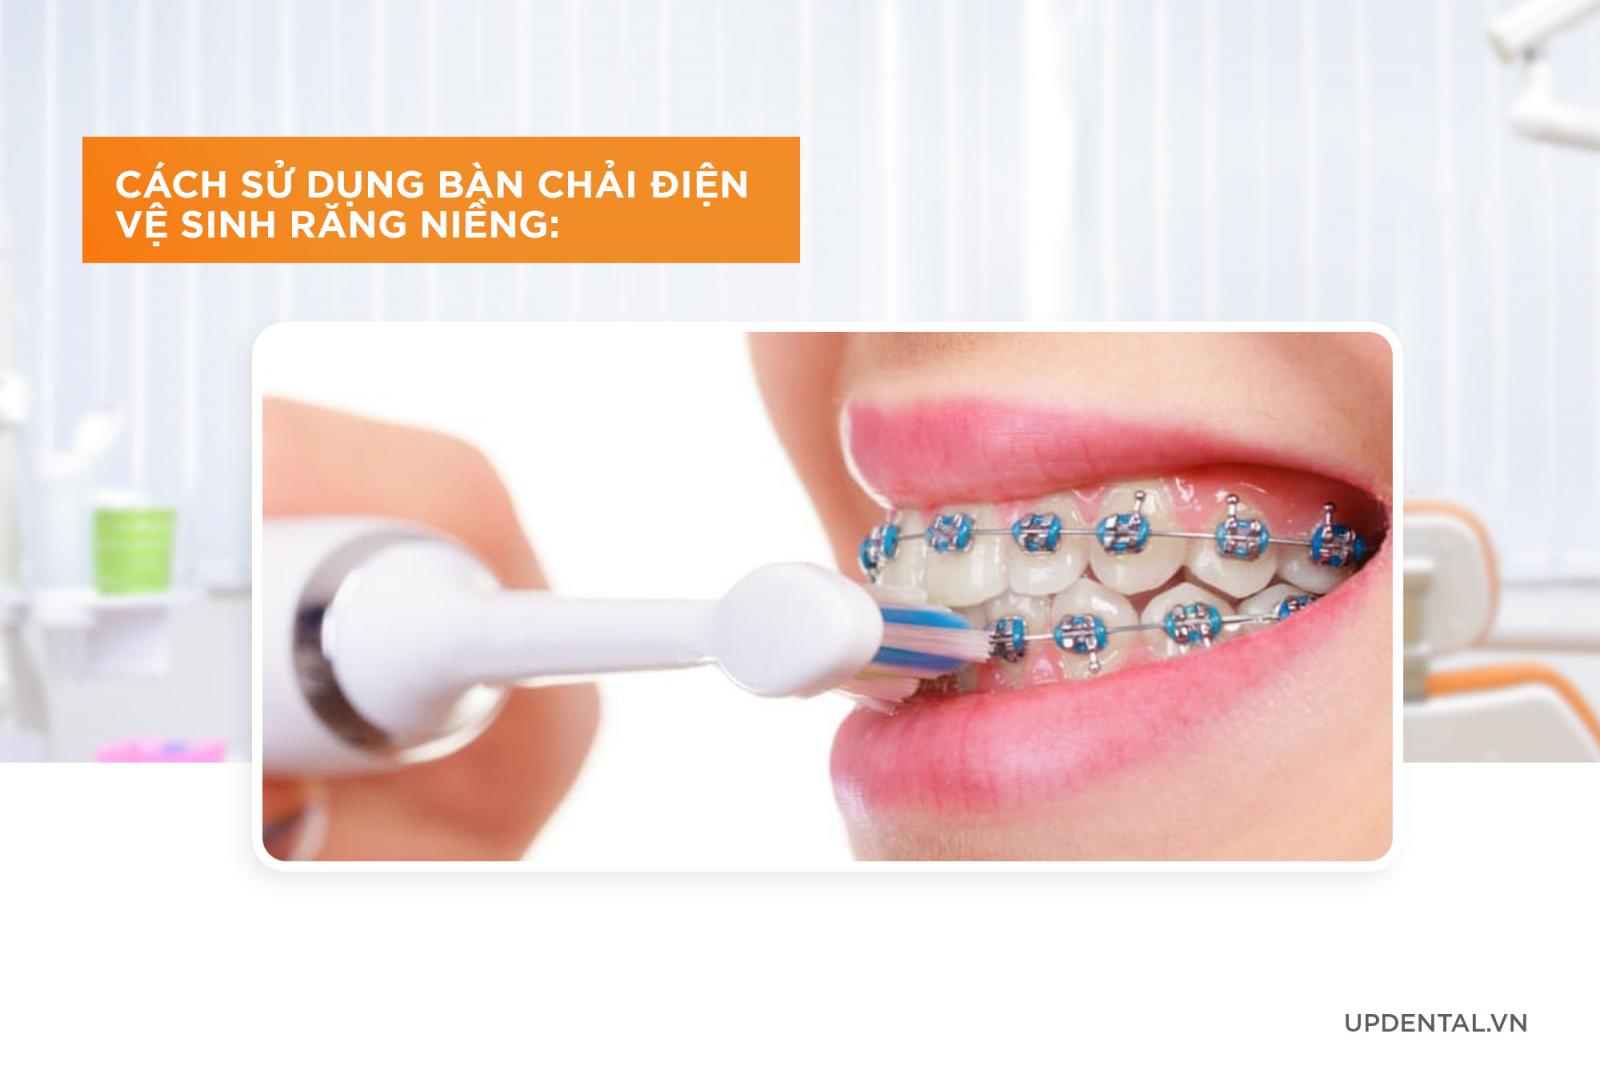 cách sử dụng bàn chải điện vệ sinh răng miệng khi niềng răng